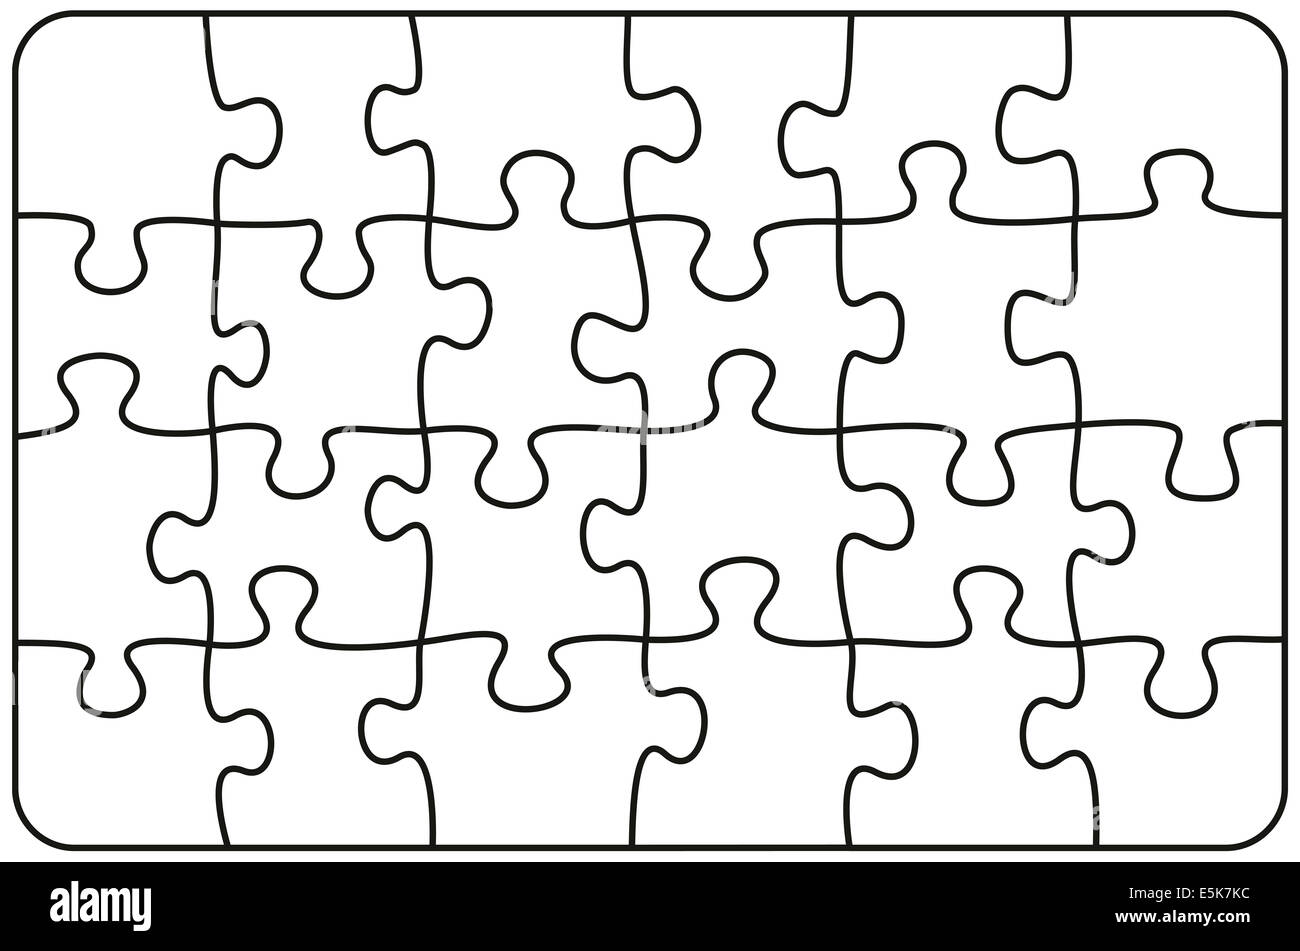 Jigsaw Puzzle Rectangle - illustration on white background. Stock Photo